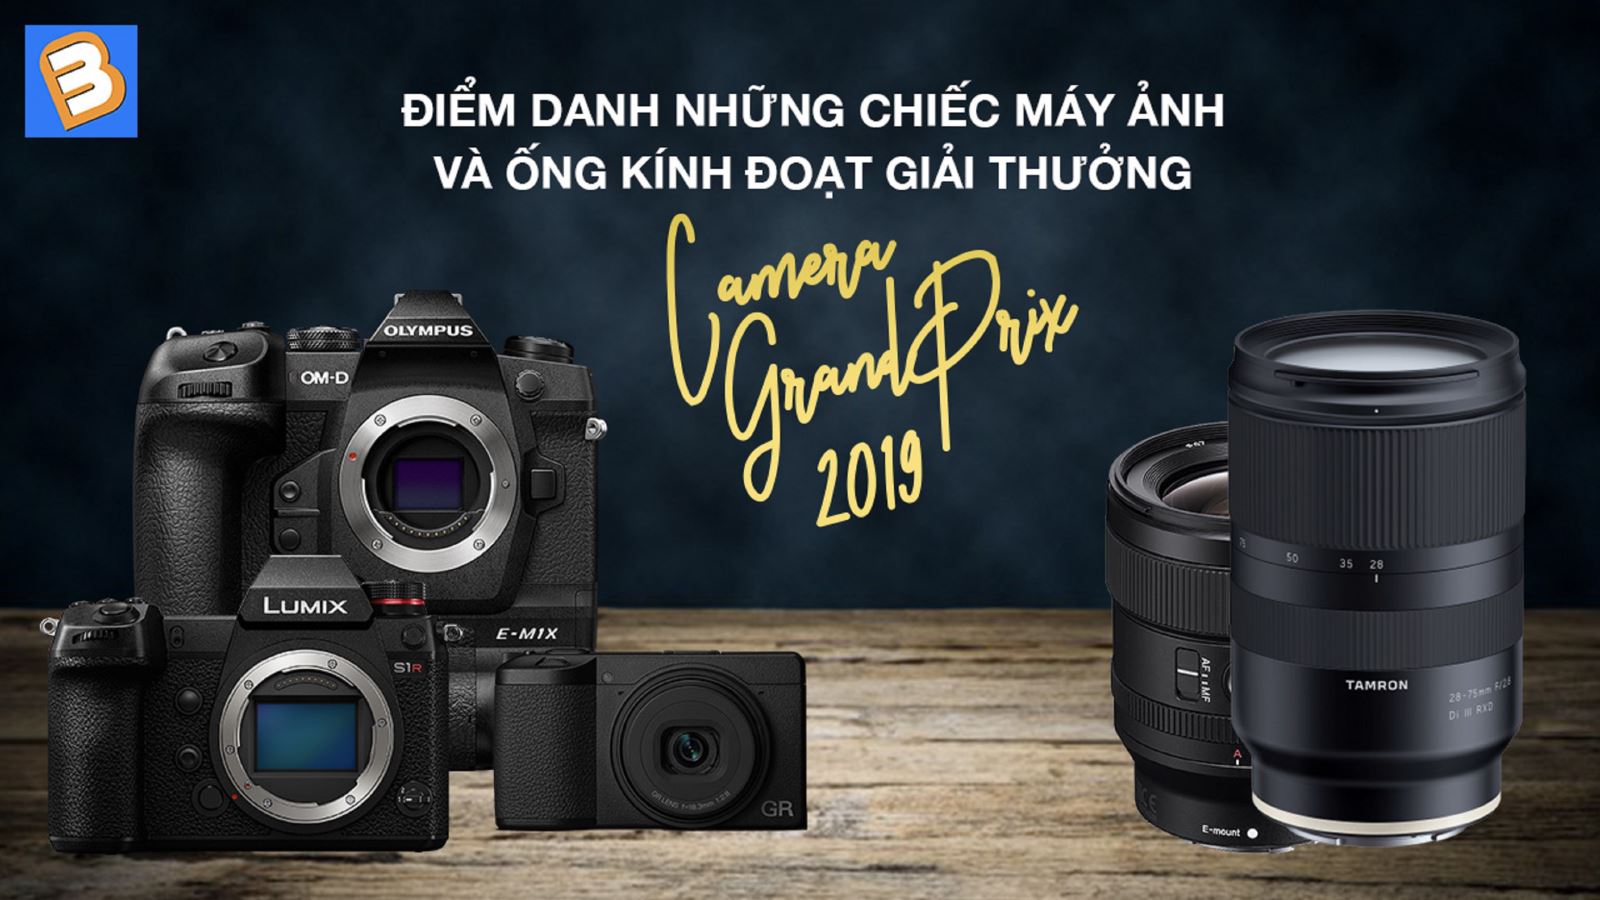 Điểm danh những chiếc máy ảnh và ống kính đoạt giải thưởng Camera Grand Prix 2019